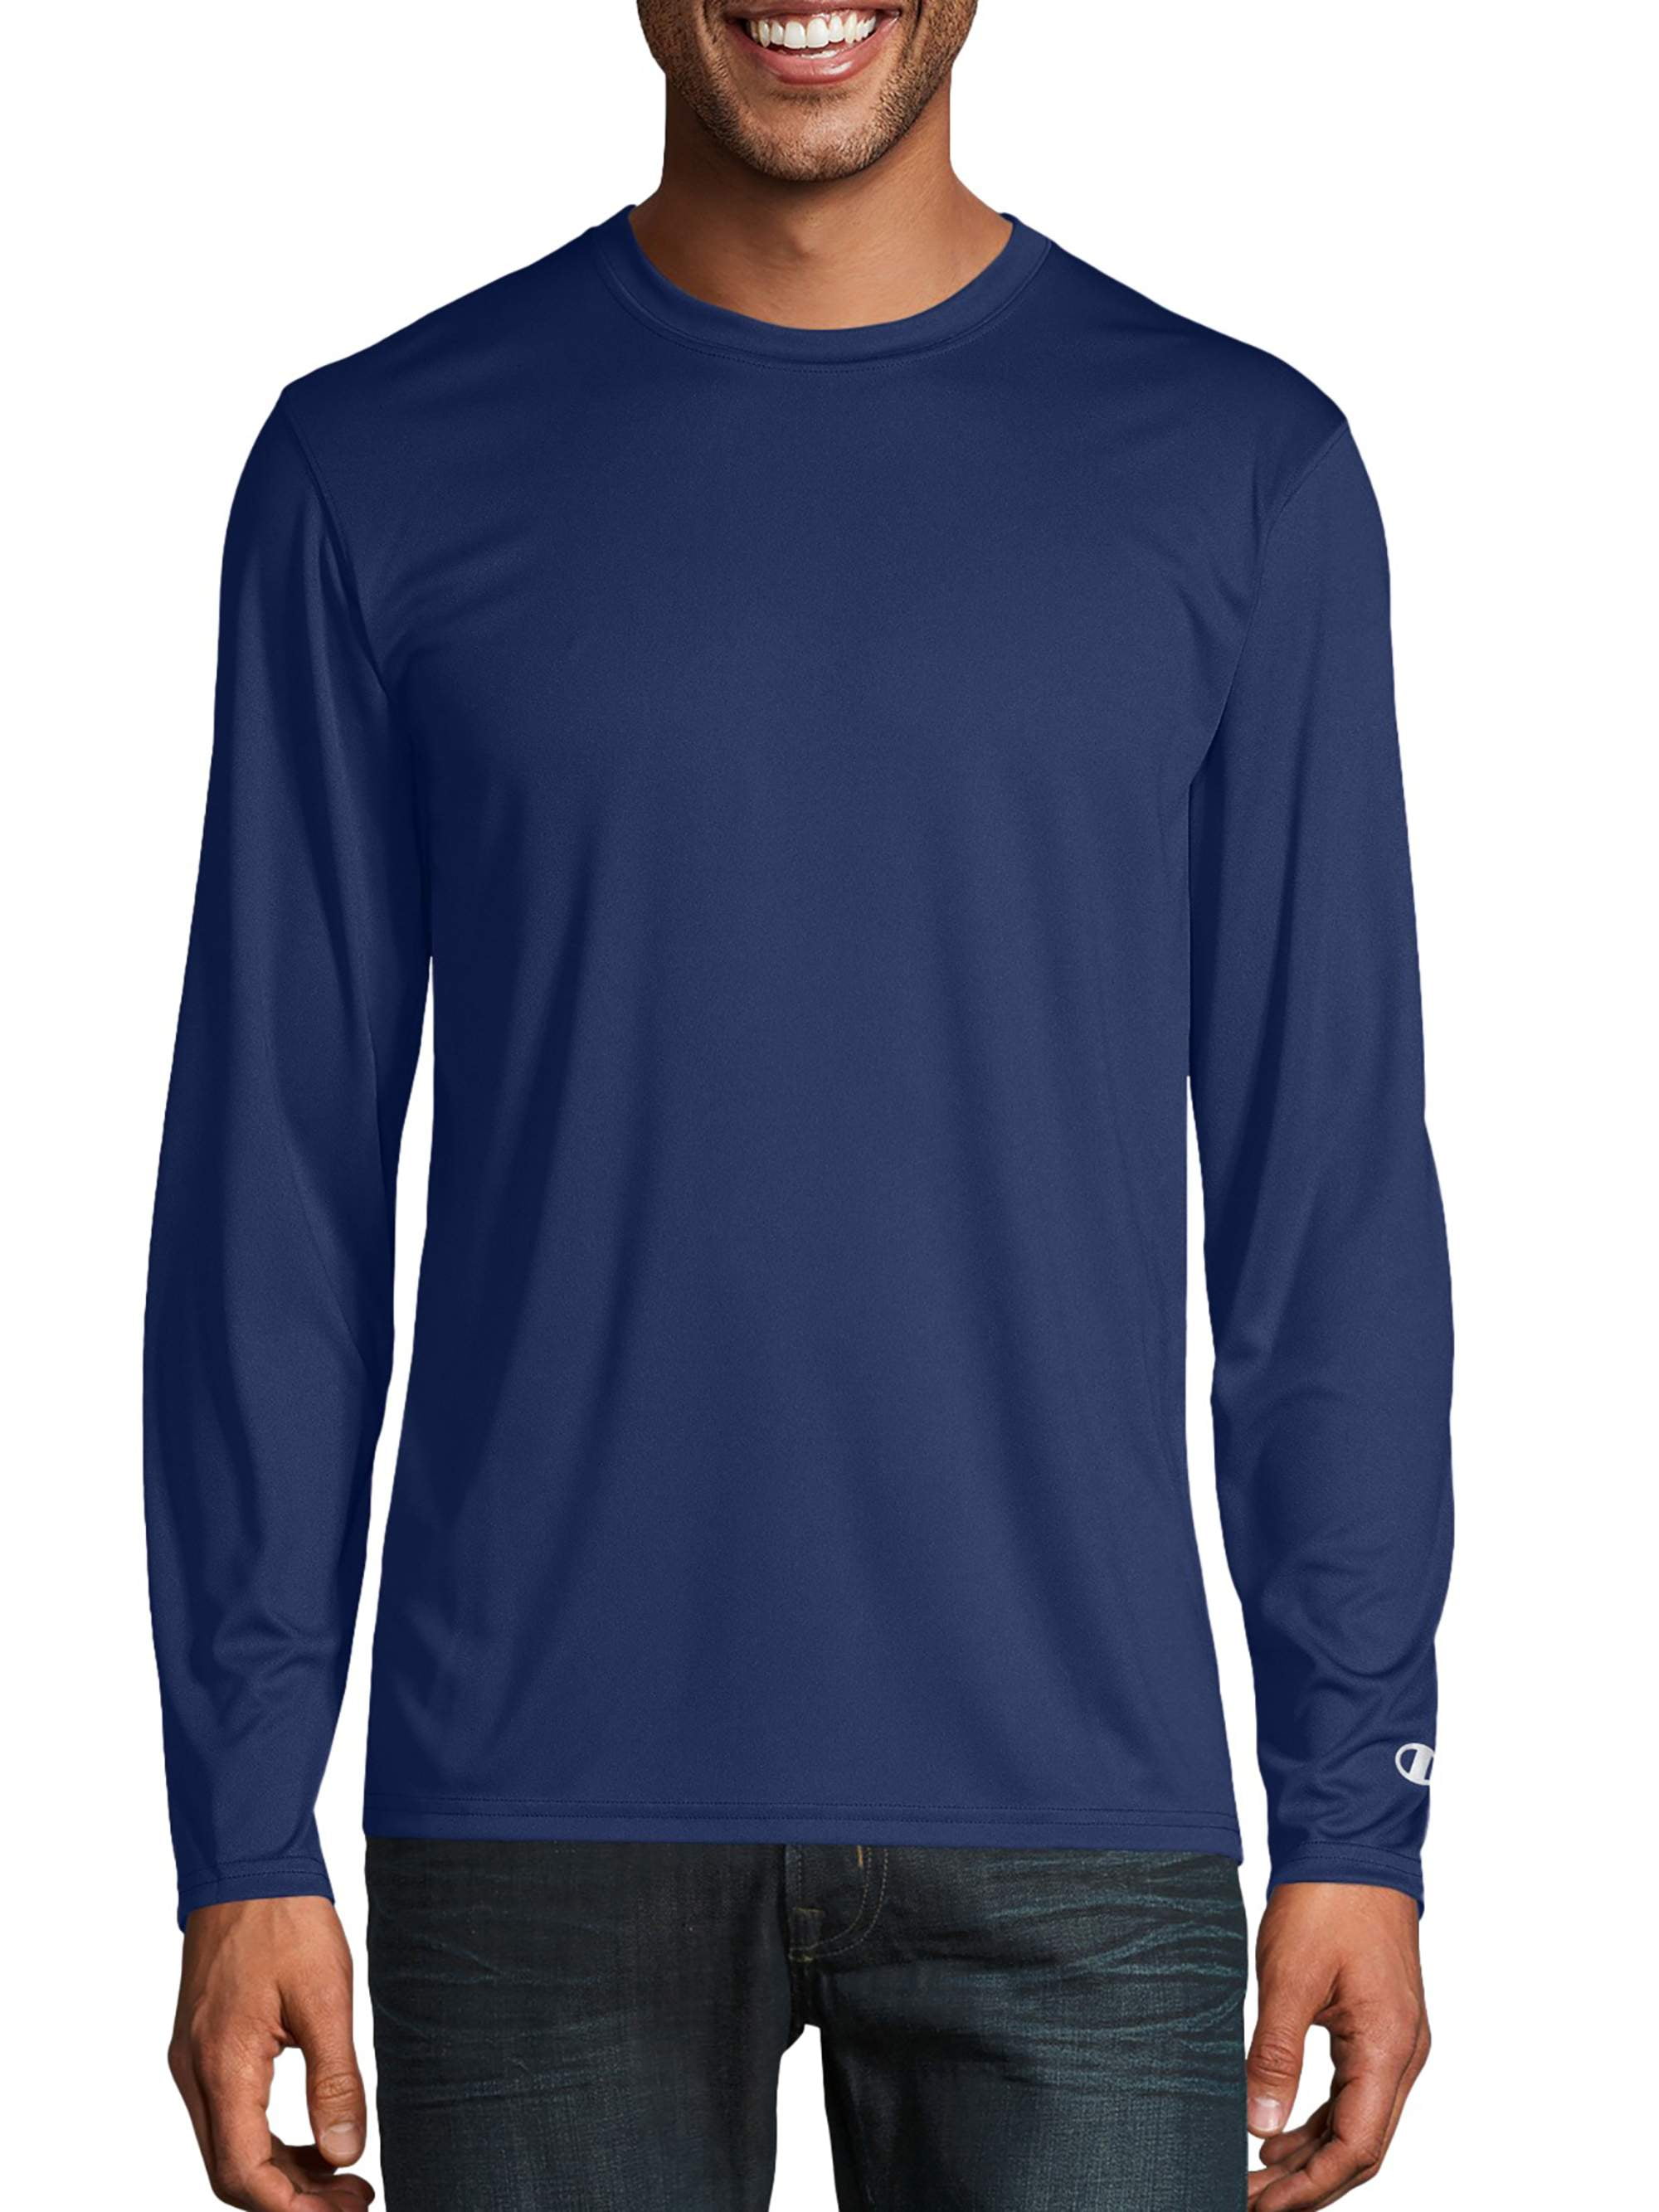 Belofte knal pijn Champion Men's Long Sleeve Performance T-Shirt, up to Size 3XL - Walmart.com